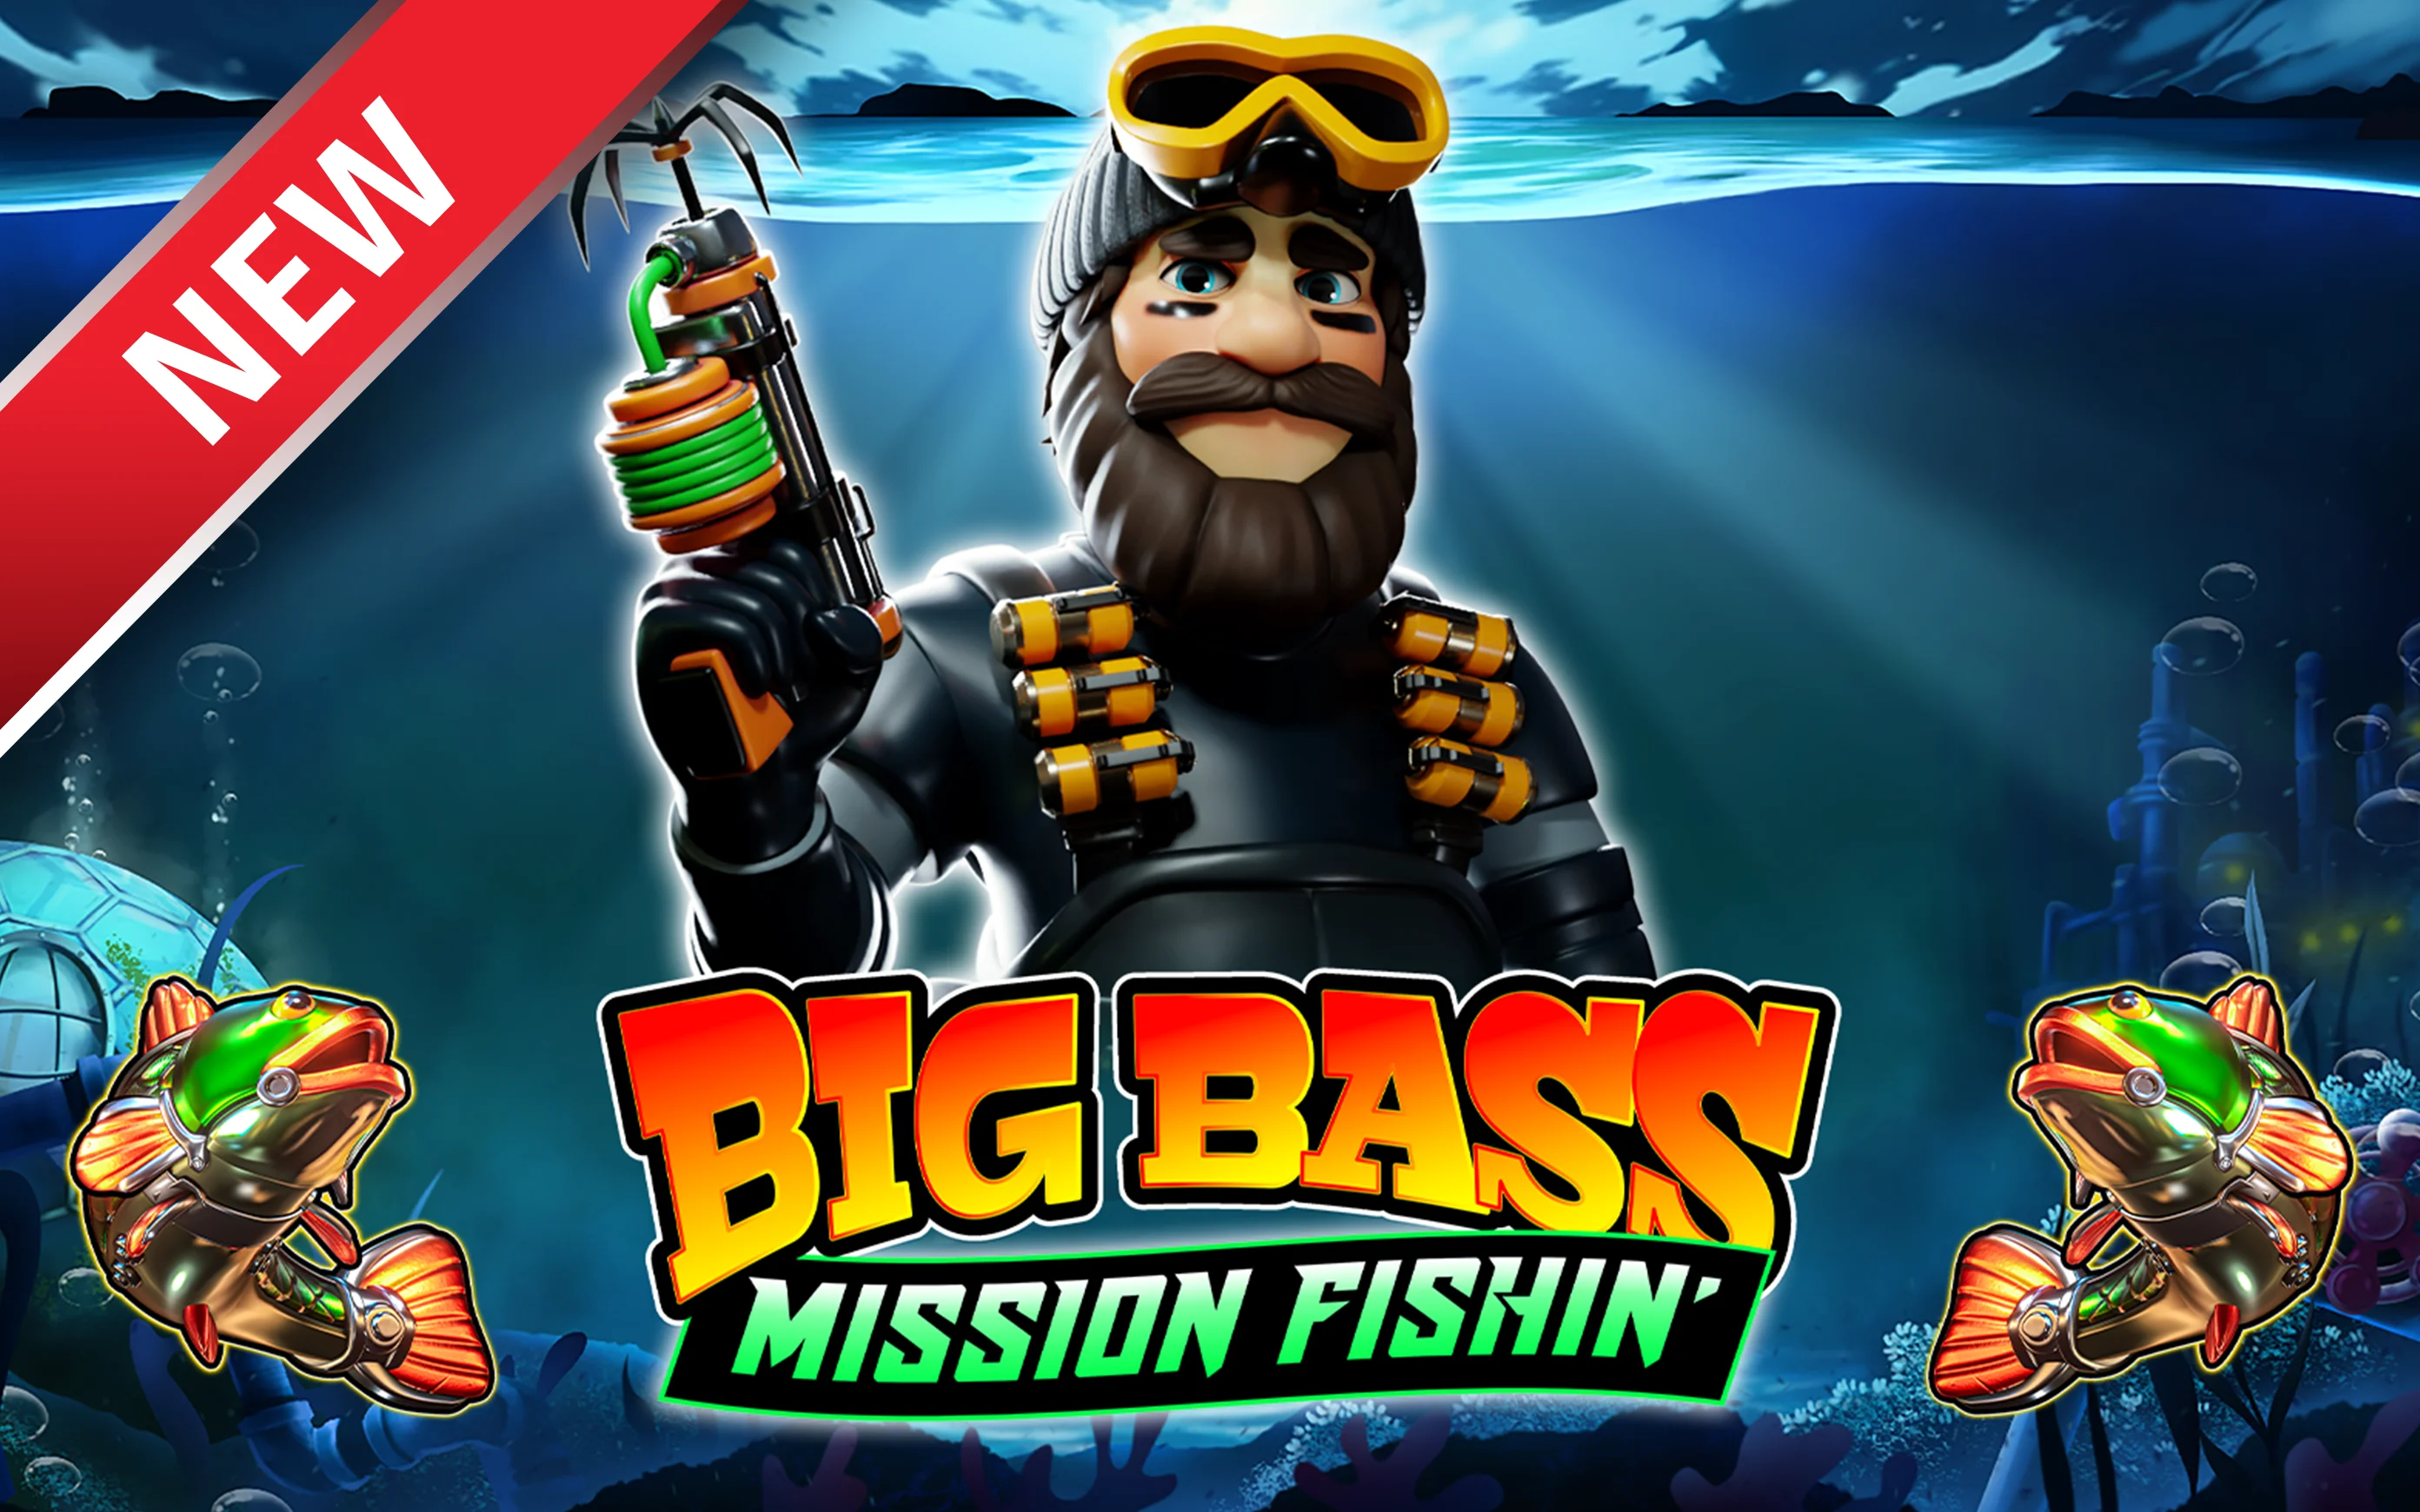 Juega a Big Bass Mission Fishin’ en el casino en línea de Starcasino.be